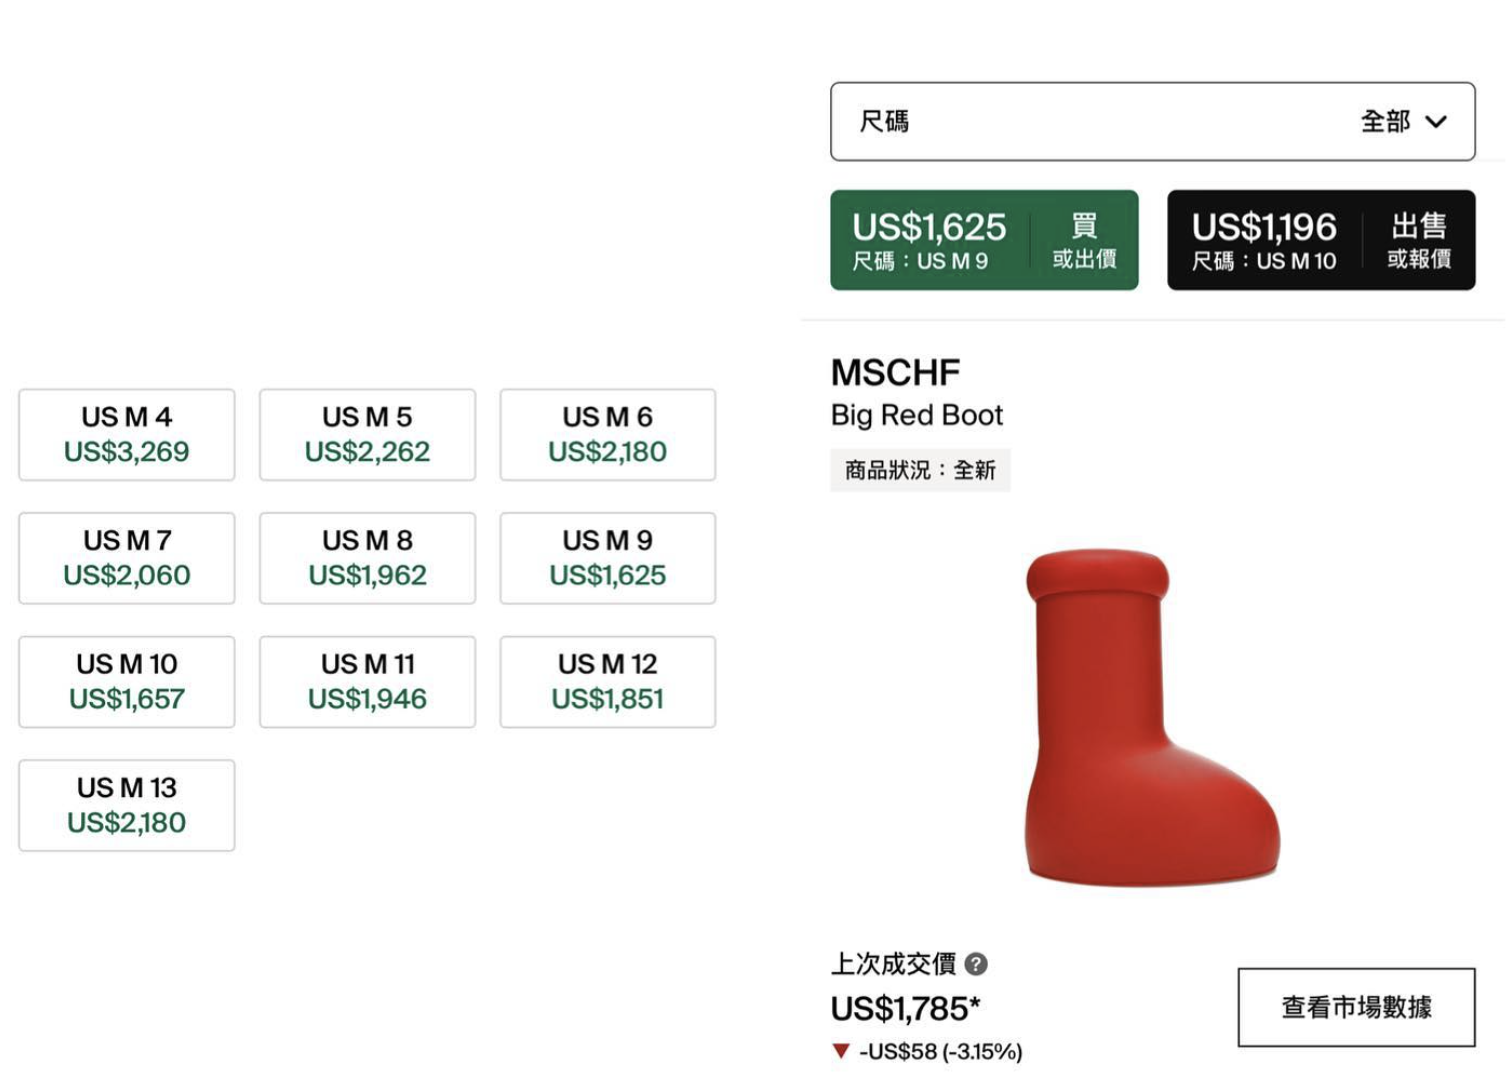 創意團隊 MSCHF 趣味鞋款 BIG RED BOOT STOCKX 最高轉售價高達 2.6 萬港幣